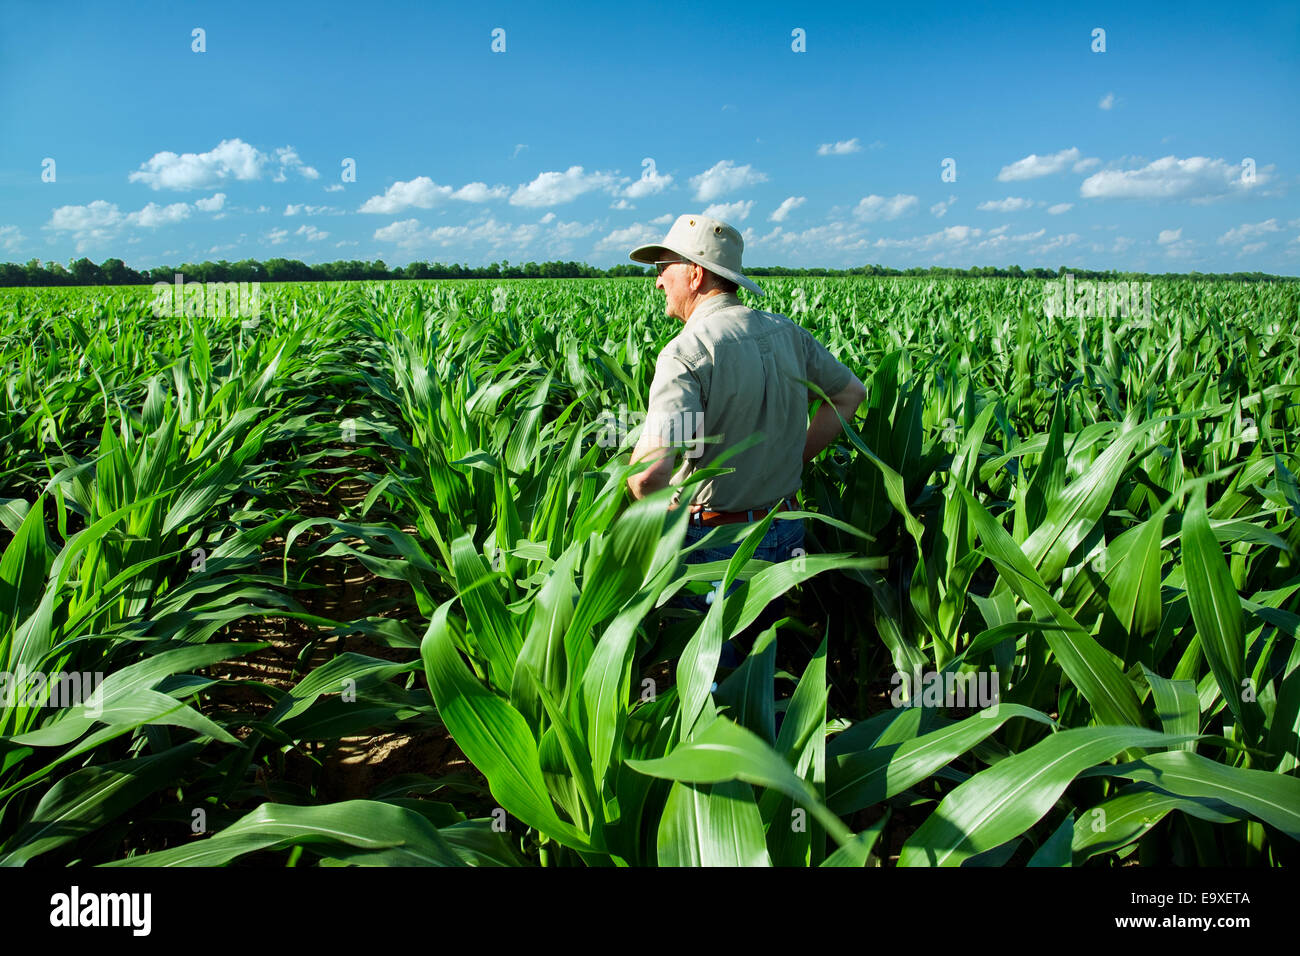 Landwirtschaft - ein Bauer (Züchter) untersucht sein Arbeitsgebiet mid Wachstum vor Quaste Bühne Maispflanzen / in der Nähe von England, Arkansas, USA. Stockfoto